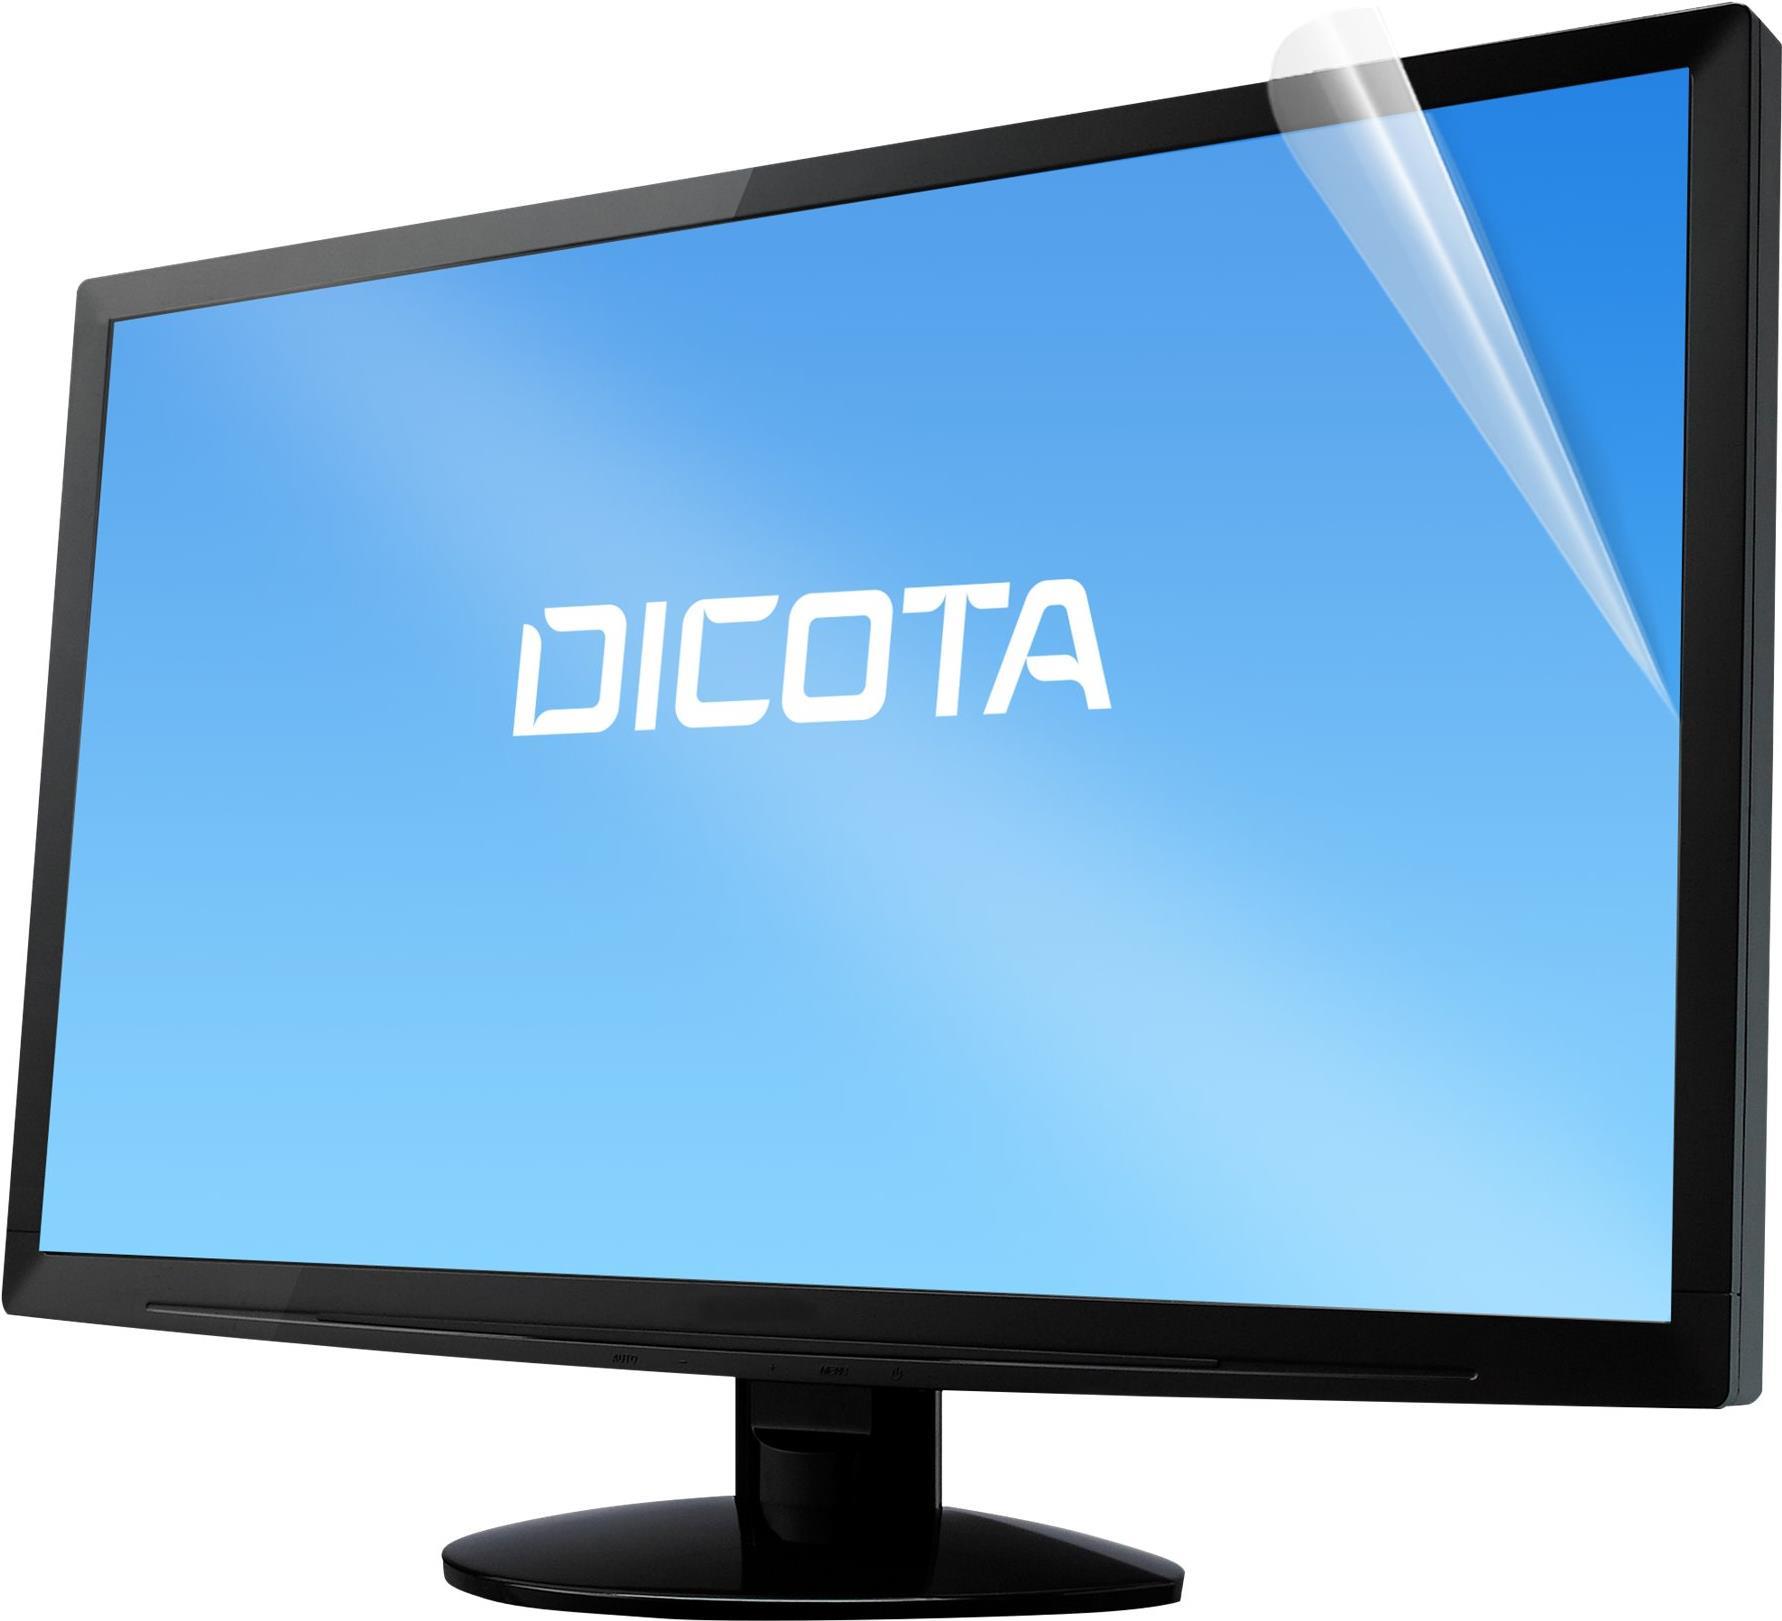 DICOTA - Display-Blendschutzfilter - entfernbar - klebend - 68,6 cm Breitbild (27  Breitbild) - durchsichtig - für Kyocera ECOSYS P4140dn, P4140dn/KL3 von Dicota